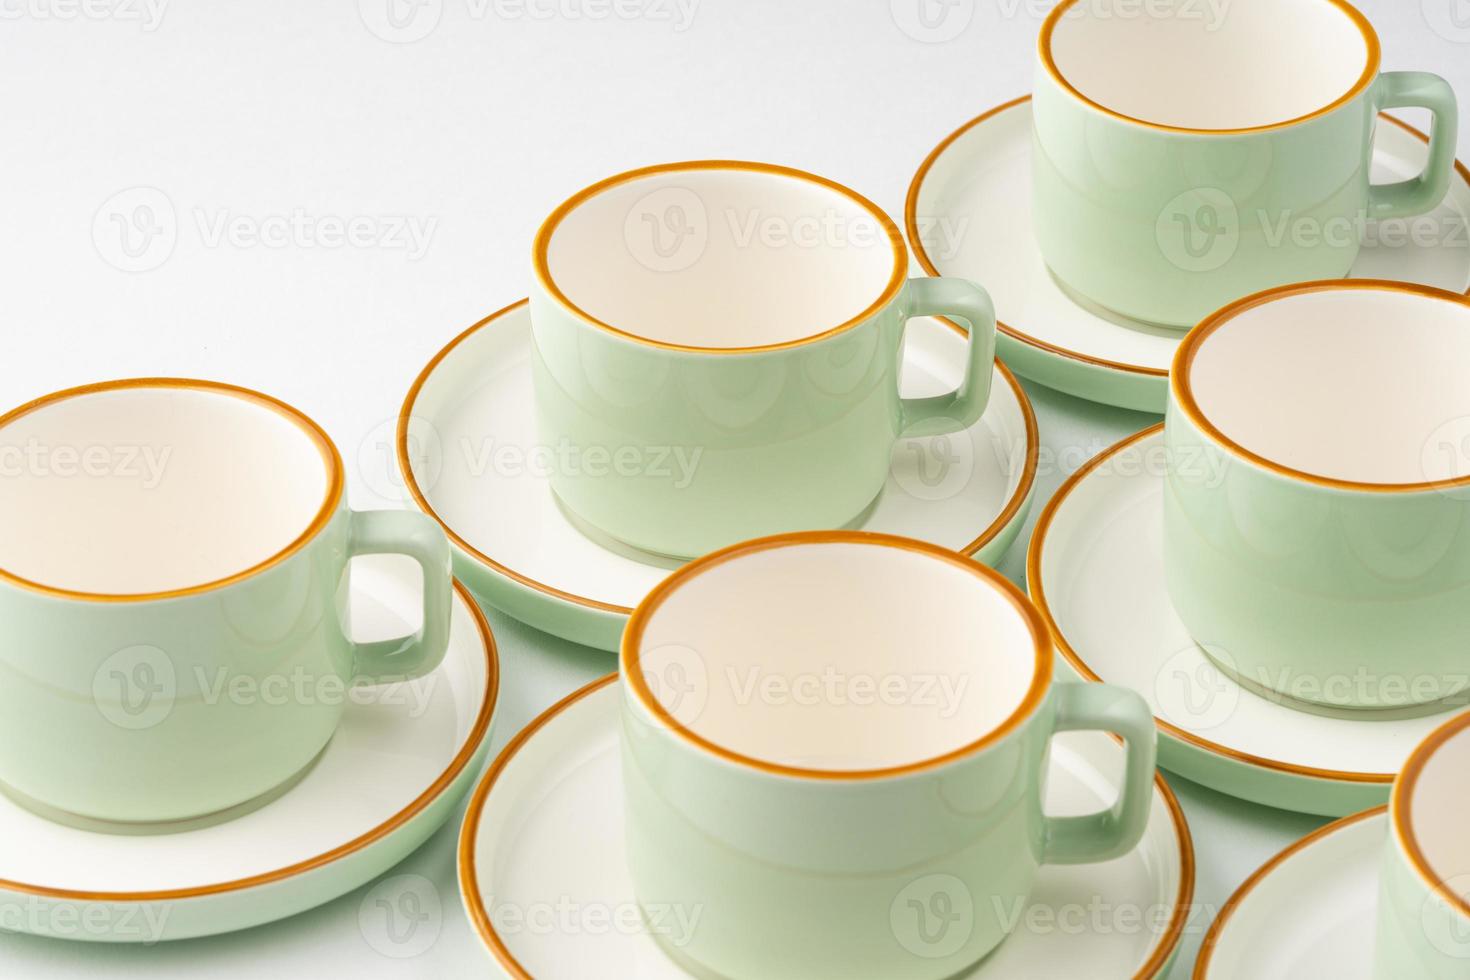 um conjunto de xícaras de cerâmica verde pastel e branco com contornos laranja foto